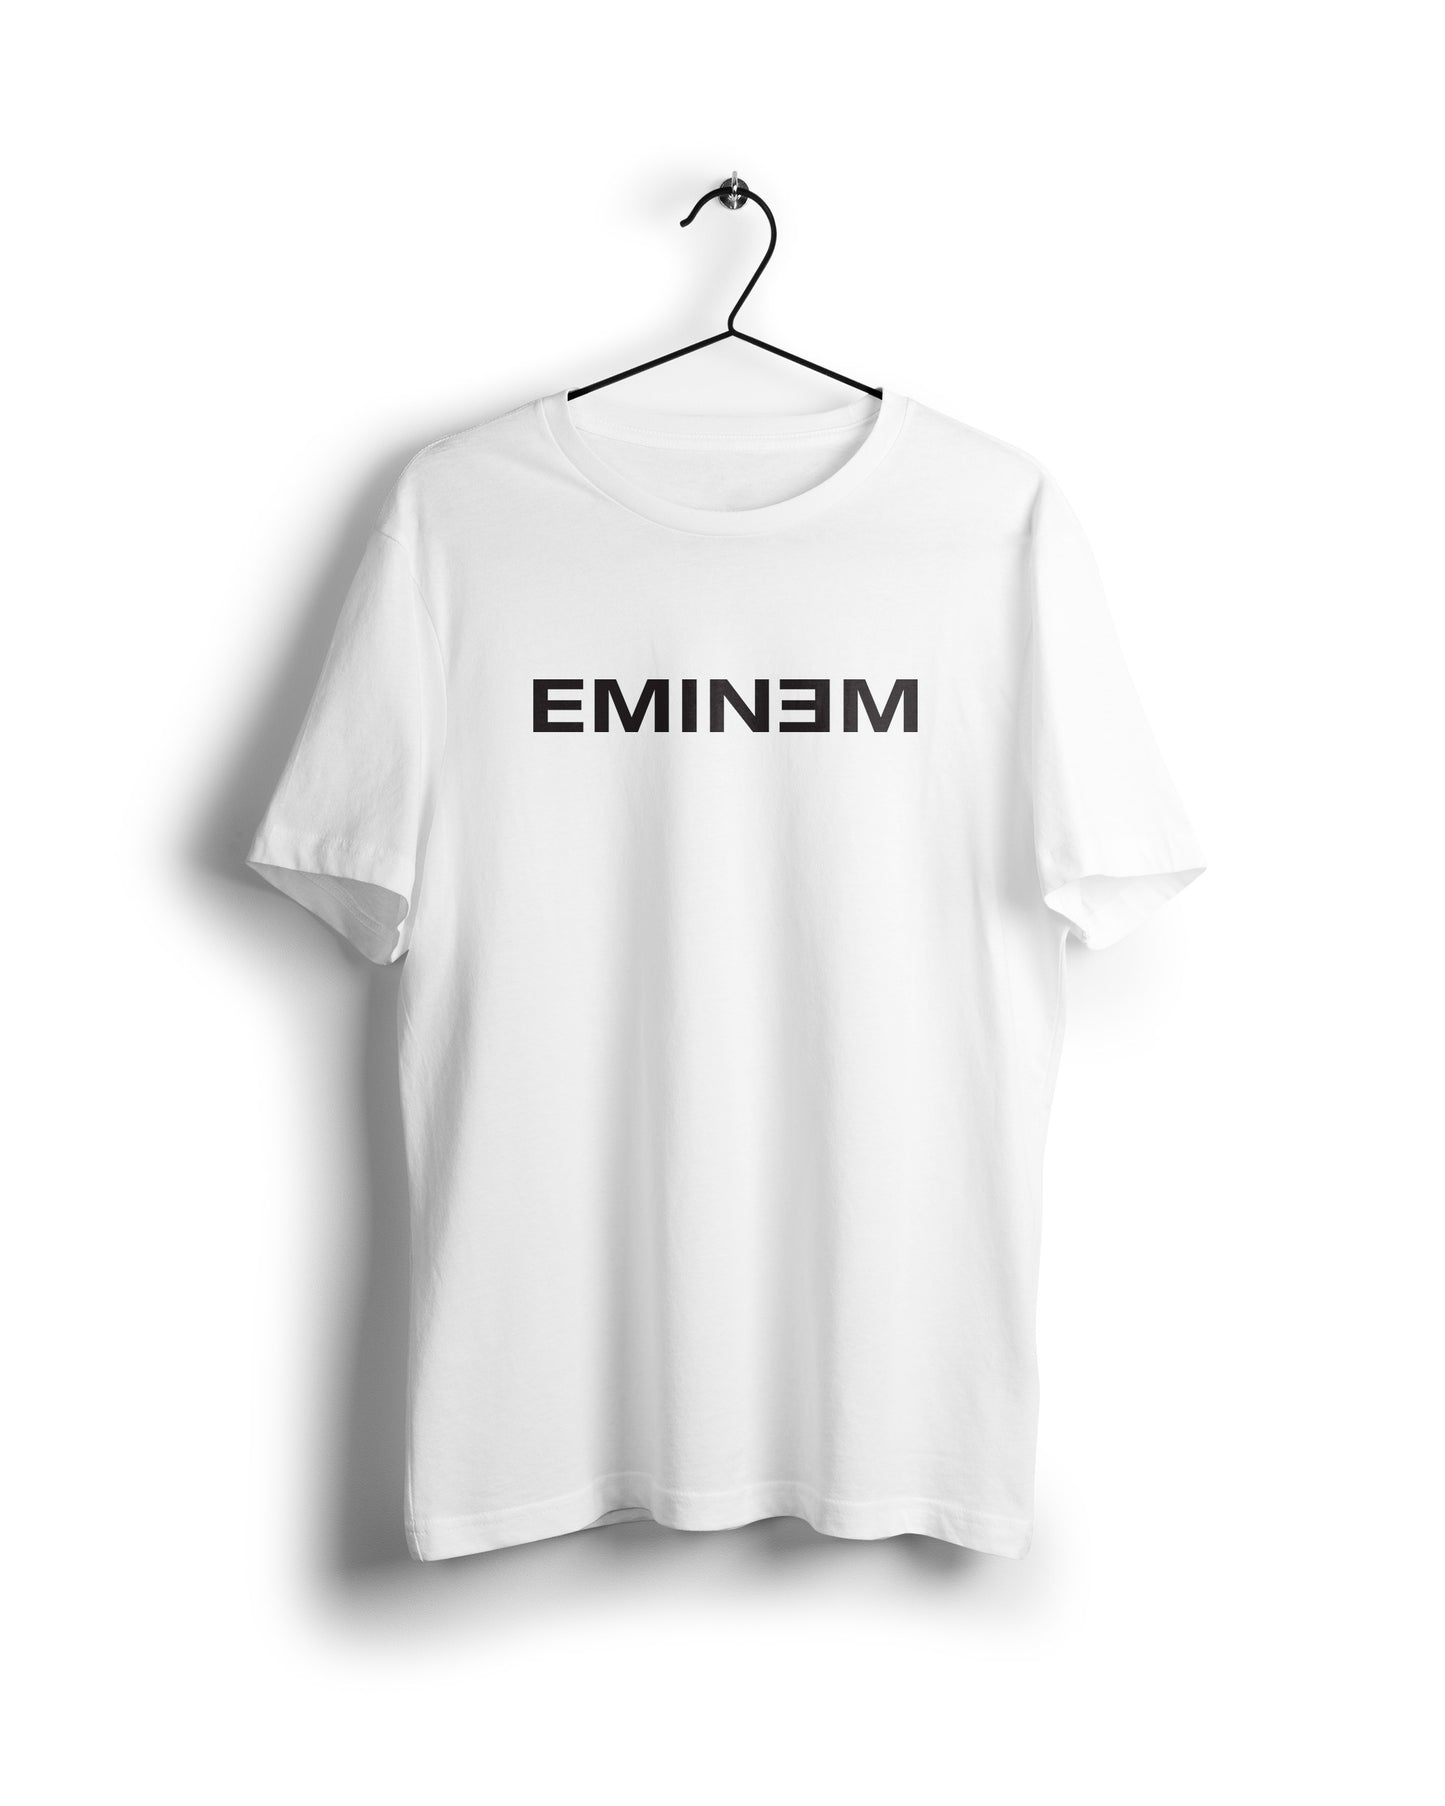 Eminem - Digital Graphics Basic T-shirt White